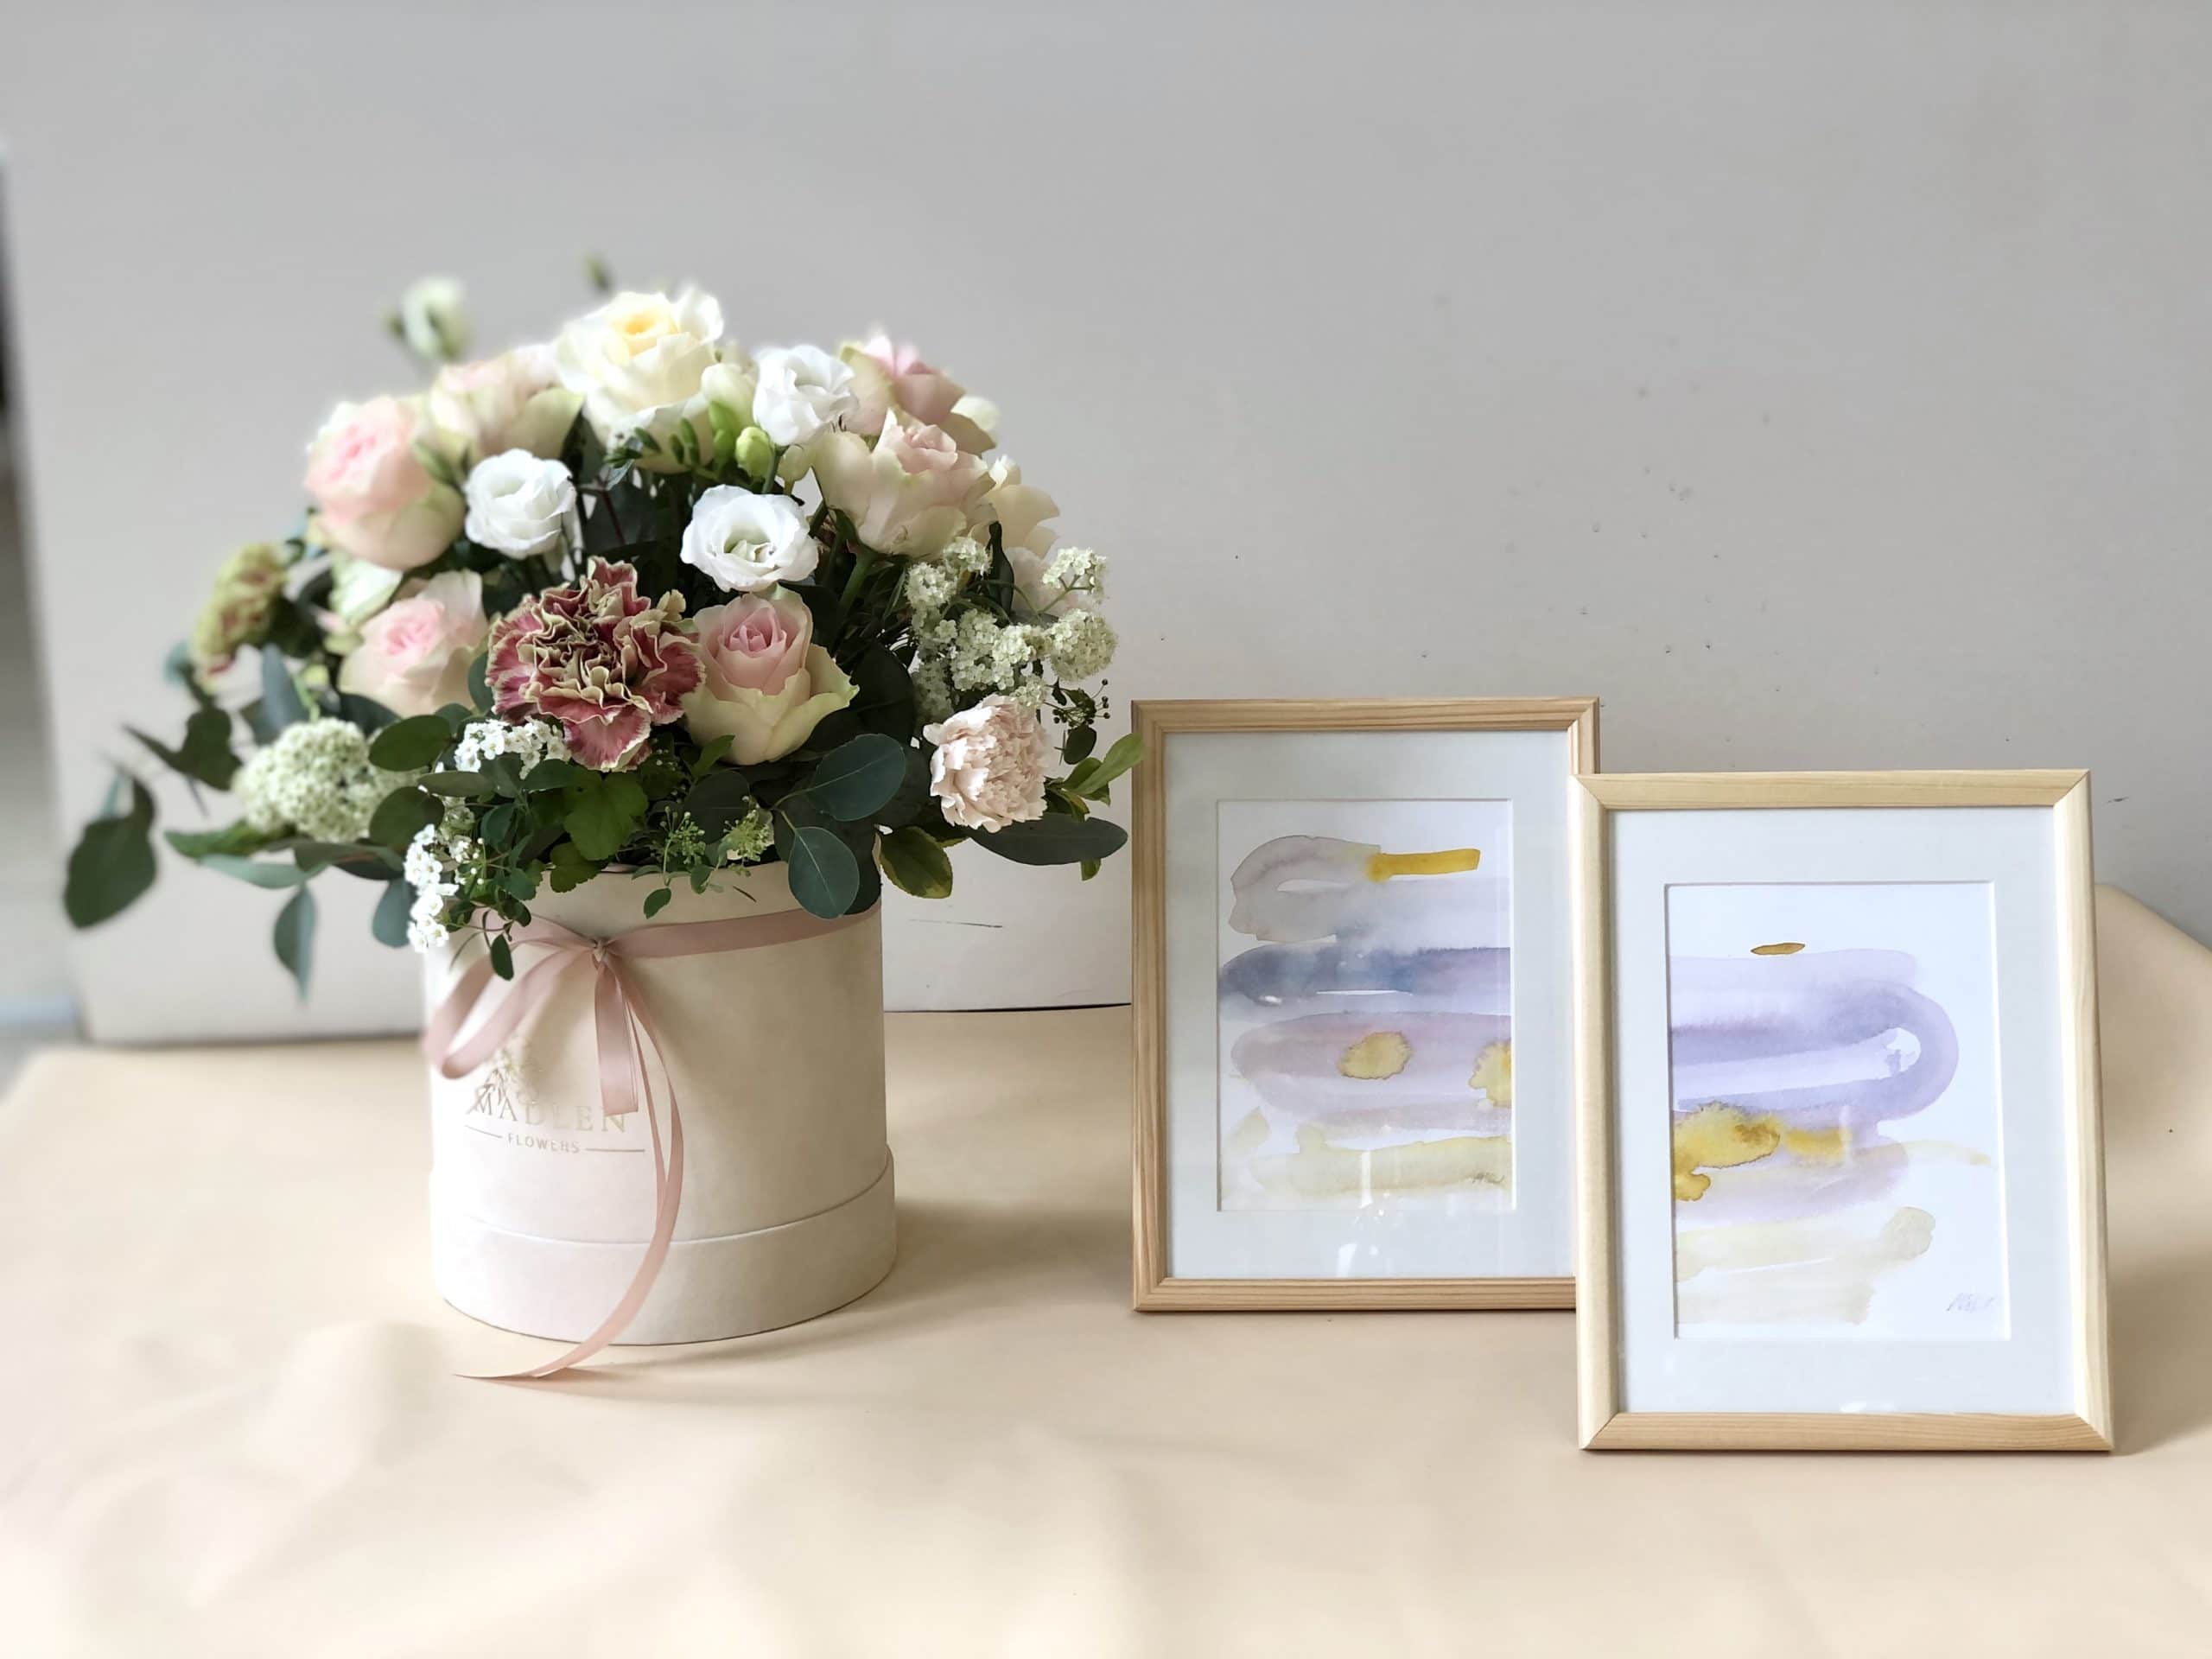 Zestaw prezentowy – flowerbox pastelowy + obrazki akwarele